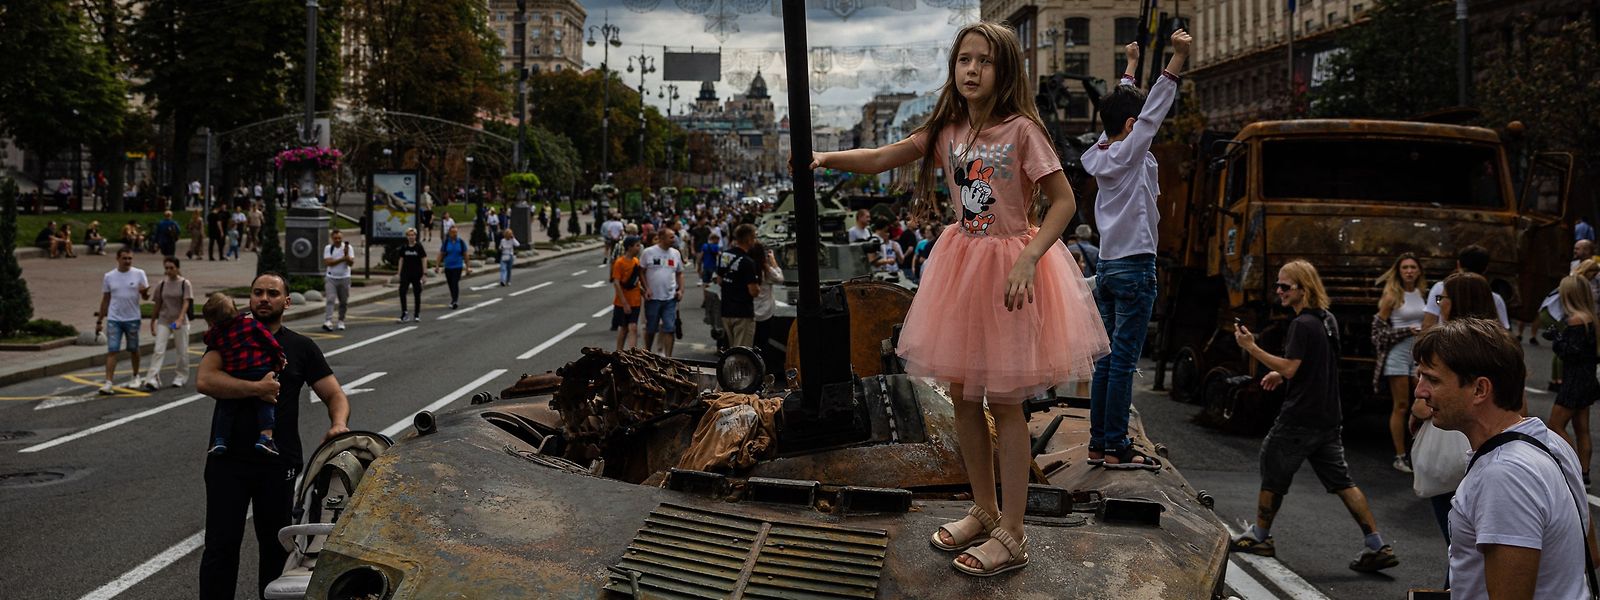 Das Mädchen steht auf zerstörtem russischen Kriegsmaterial in Kiew - einem Open-Air Militärmuseum, das zum ukrainischen Unabhängigkeitstag am 24. August eingerichtet wurde.